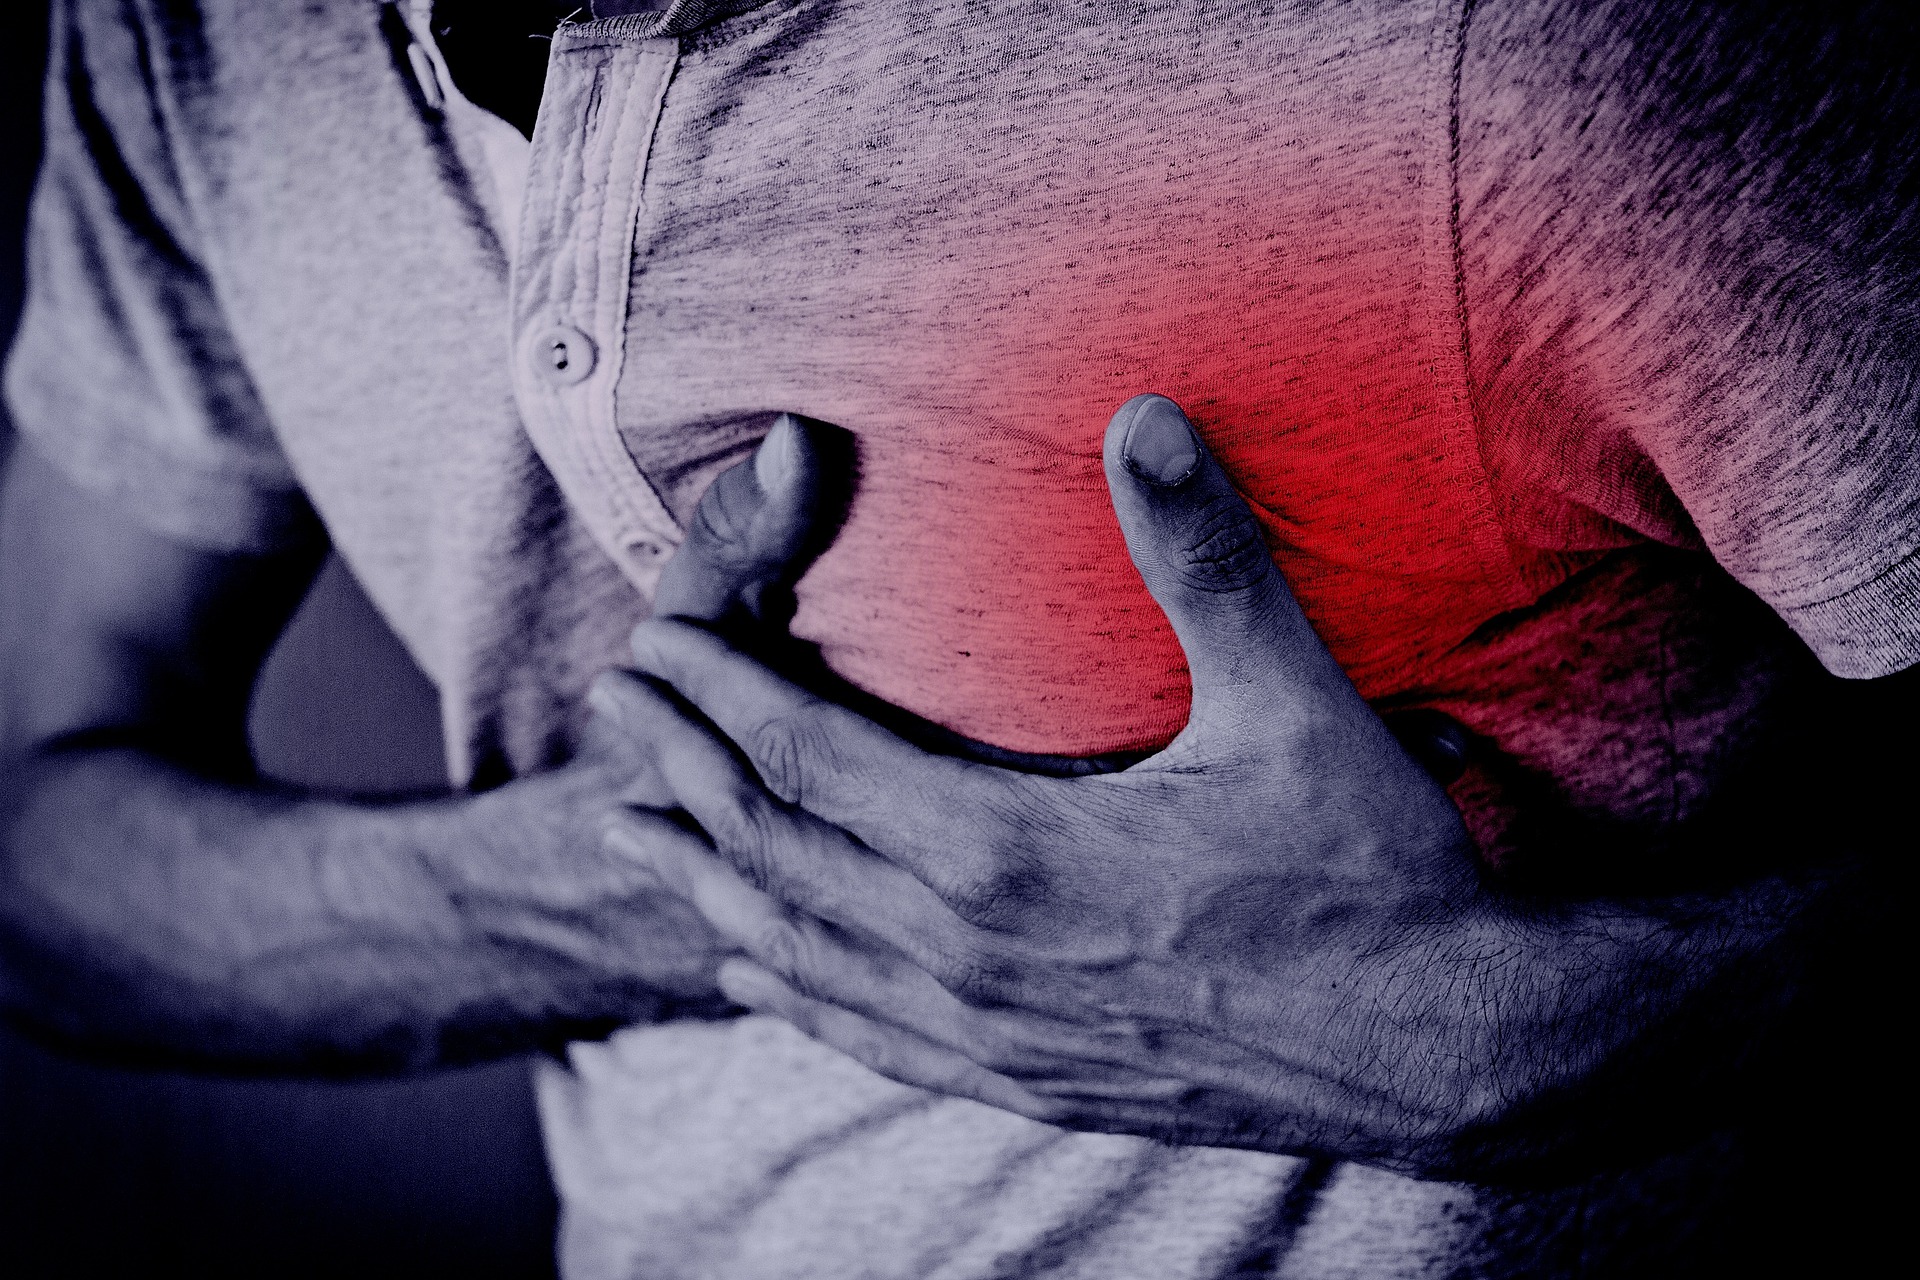 Morte súbita cardíaca: Especialista explica quem corre mais risco de sofrer desta condição